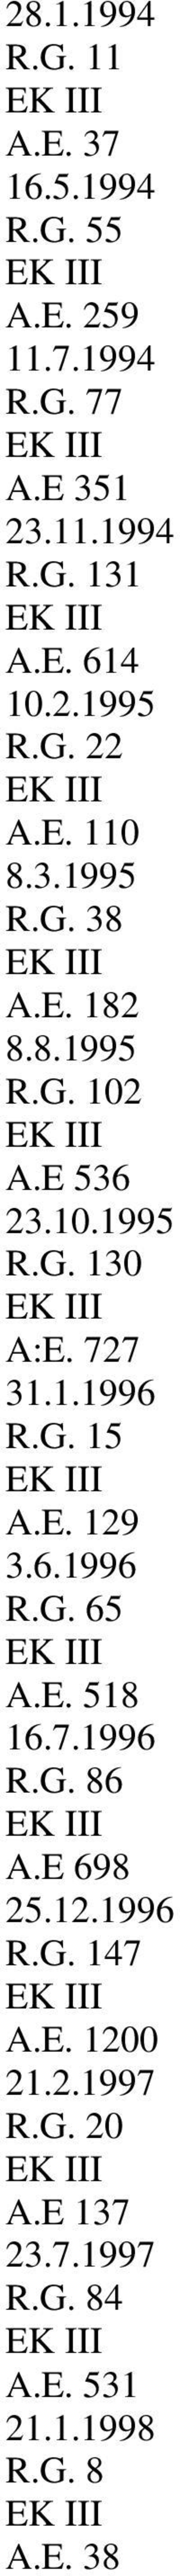 727 31.1.1996 R.G. 15 A.E. 129 3.6.1996 R.G. 65 A.E. 518 16.7.1996 R.G. 86 A.E 698 25.12.1996 R.G. 147 A.